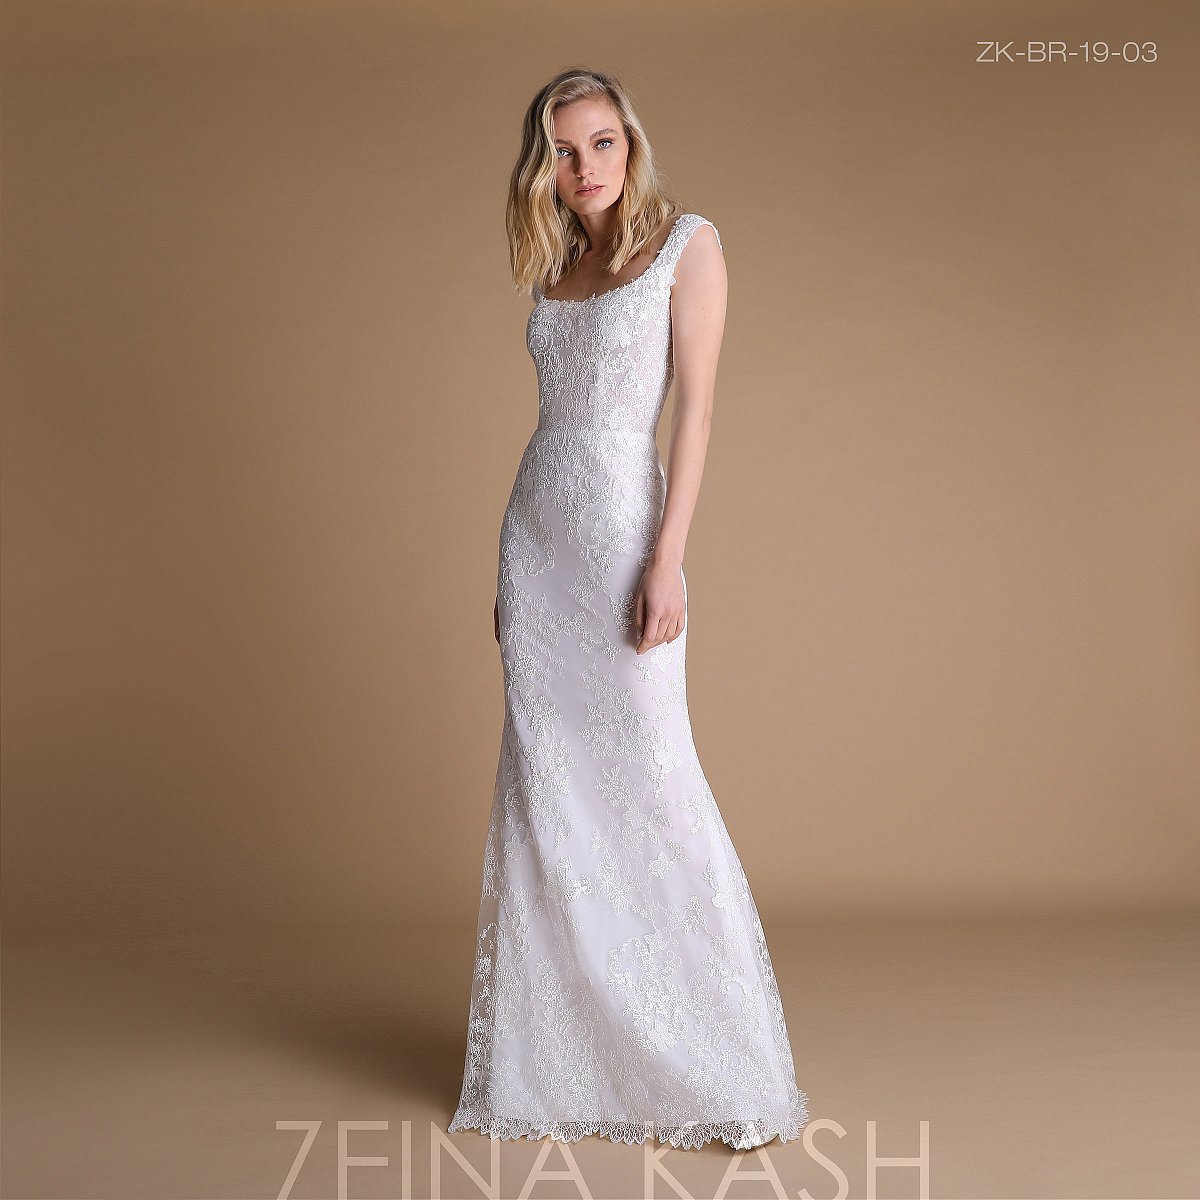 Zeina Kash συλλογή 2019 - Γάμος - 1